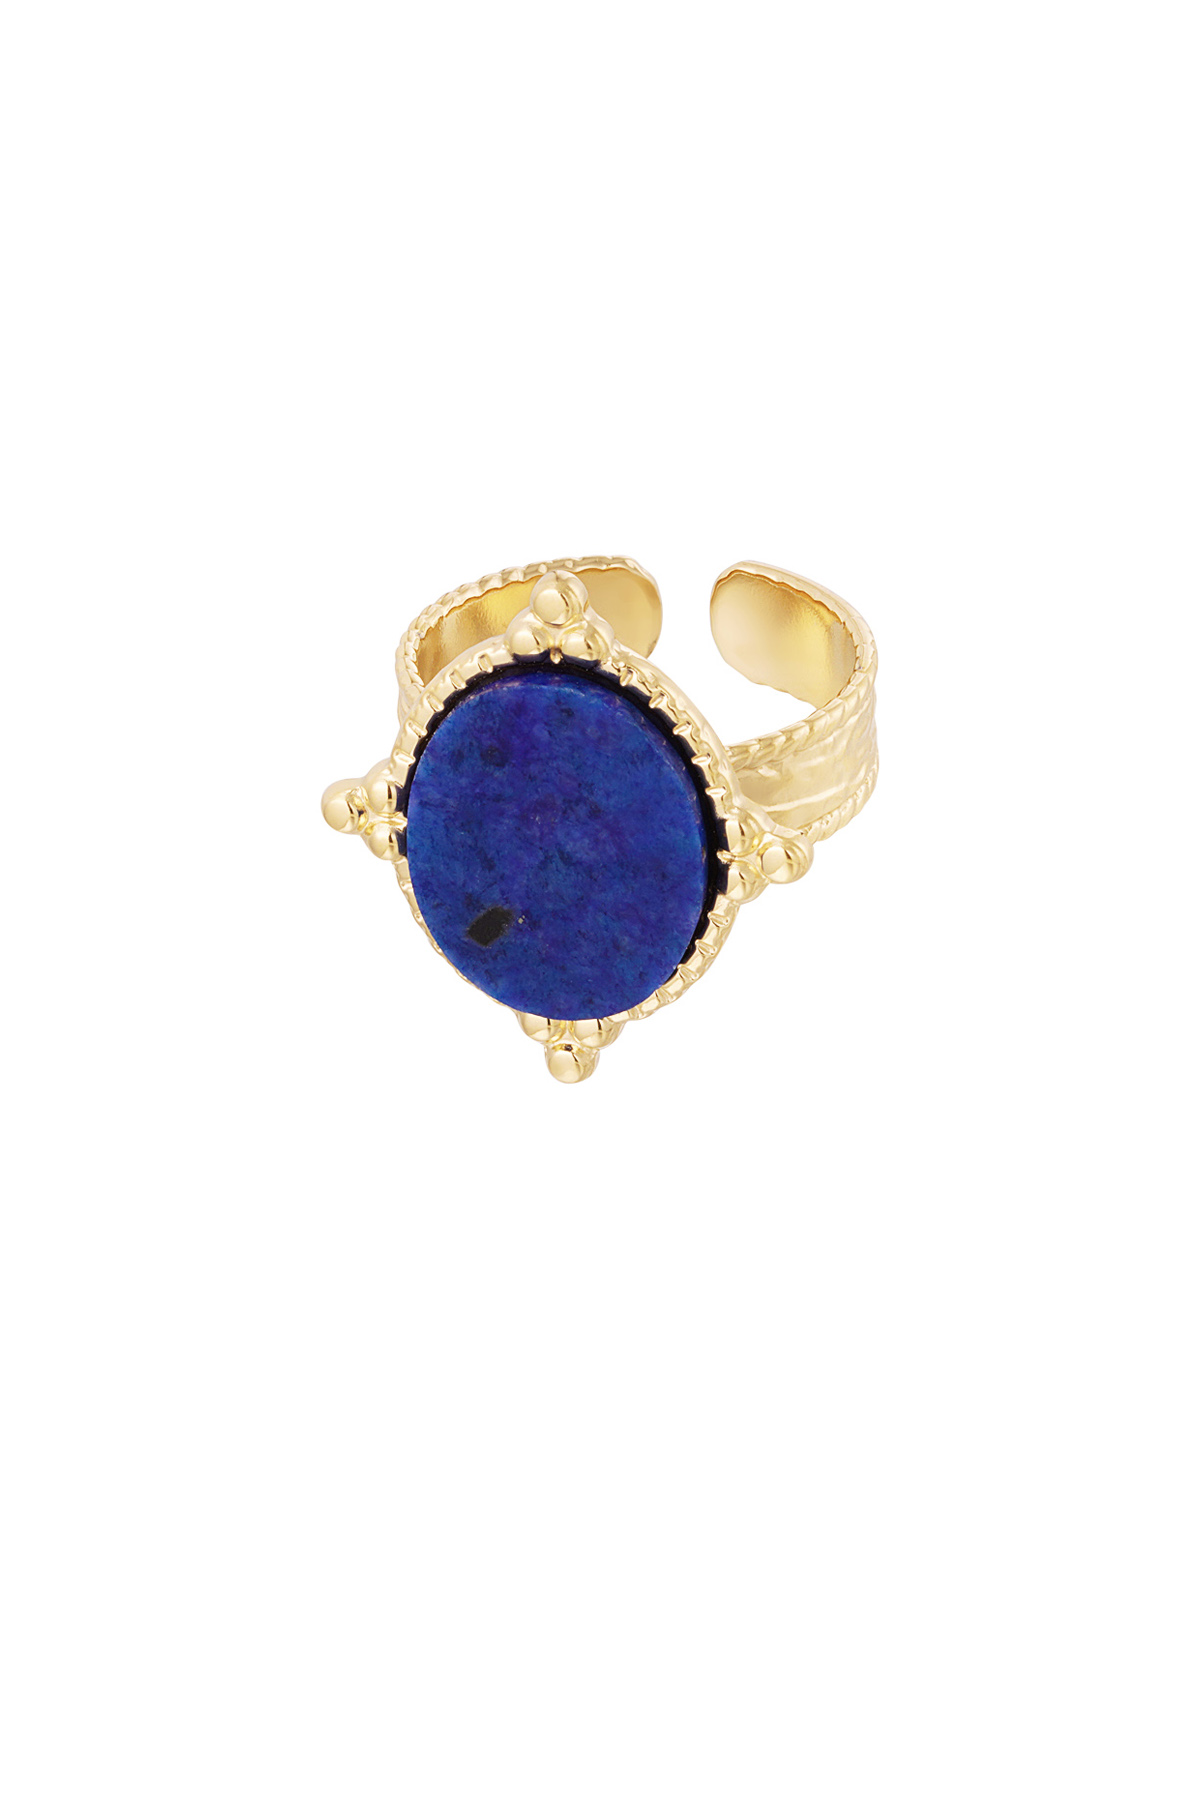 Ring steen met versiersel - goud/blauw